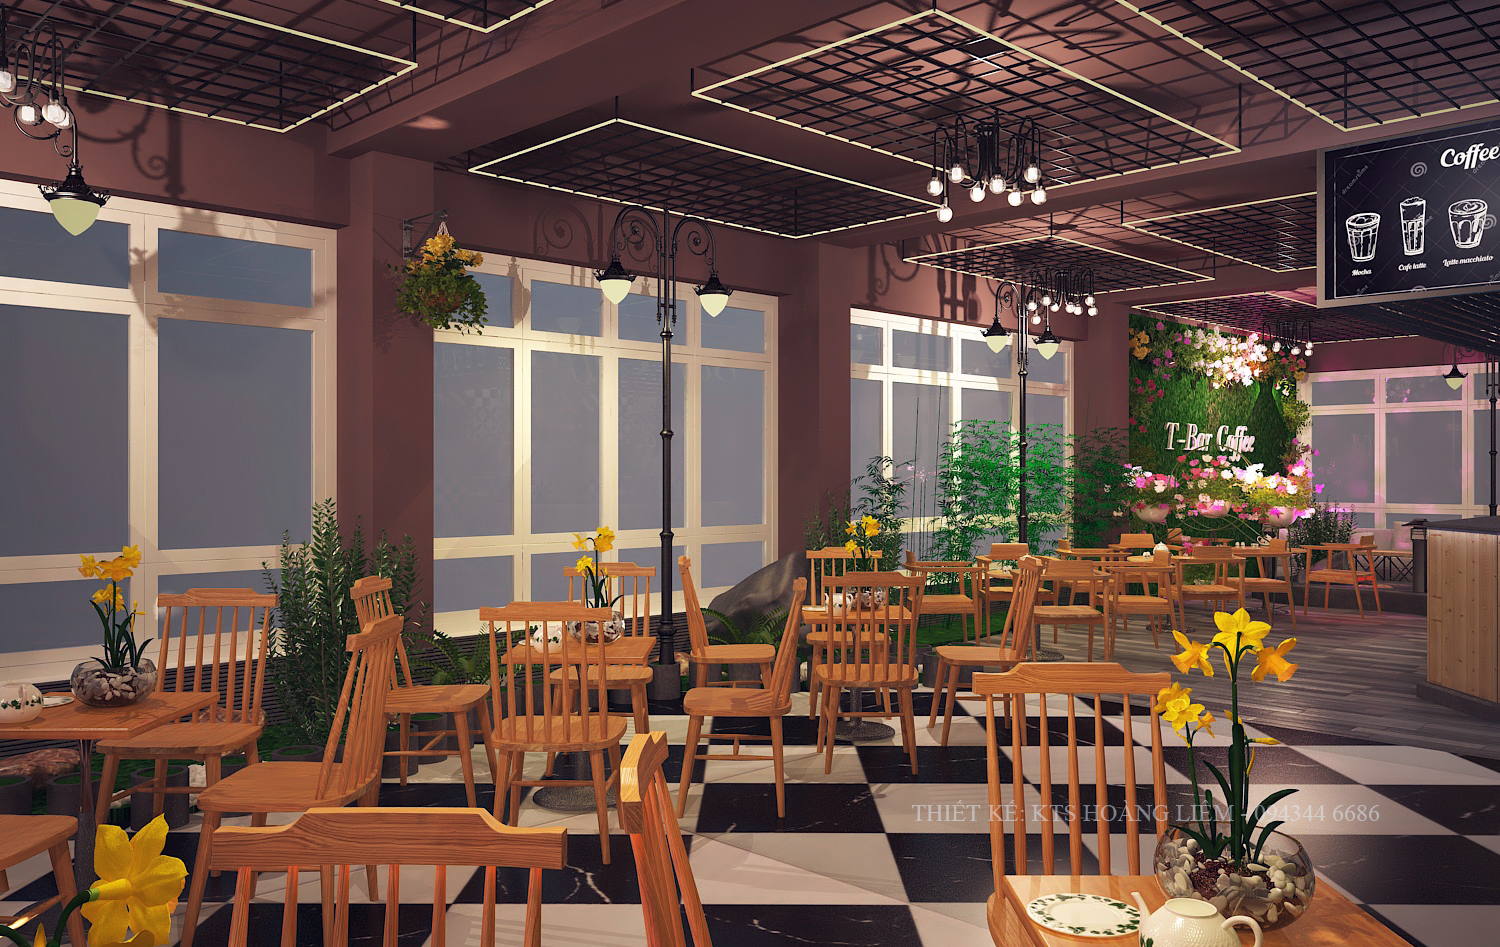 Thiết kế nội thất Cafe tại Vĩnh Phúc Thiết kế không gian cafe Vĩnh Phúc 1576581383 5